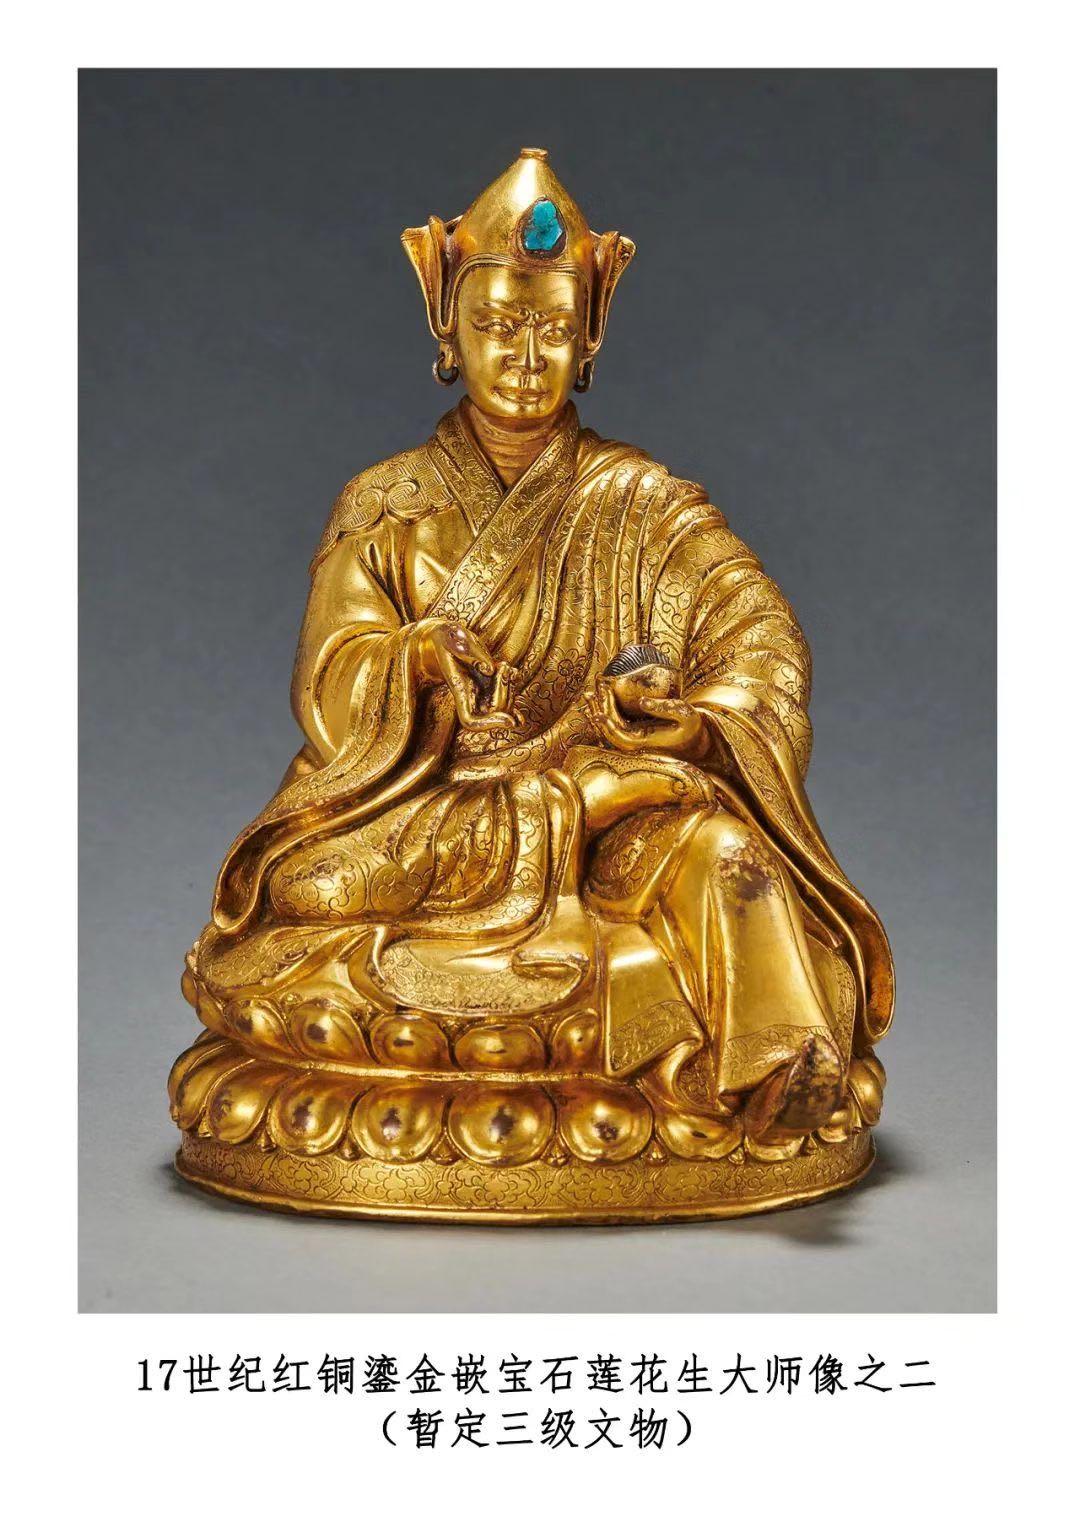 17世纪红铜鎏金嵌宝石莲花生大师像之二 暂定三级文物   罗征 摄 国家文物局供图